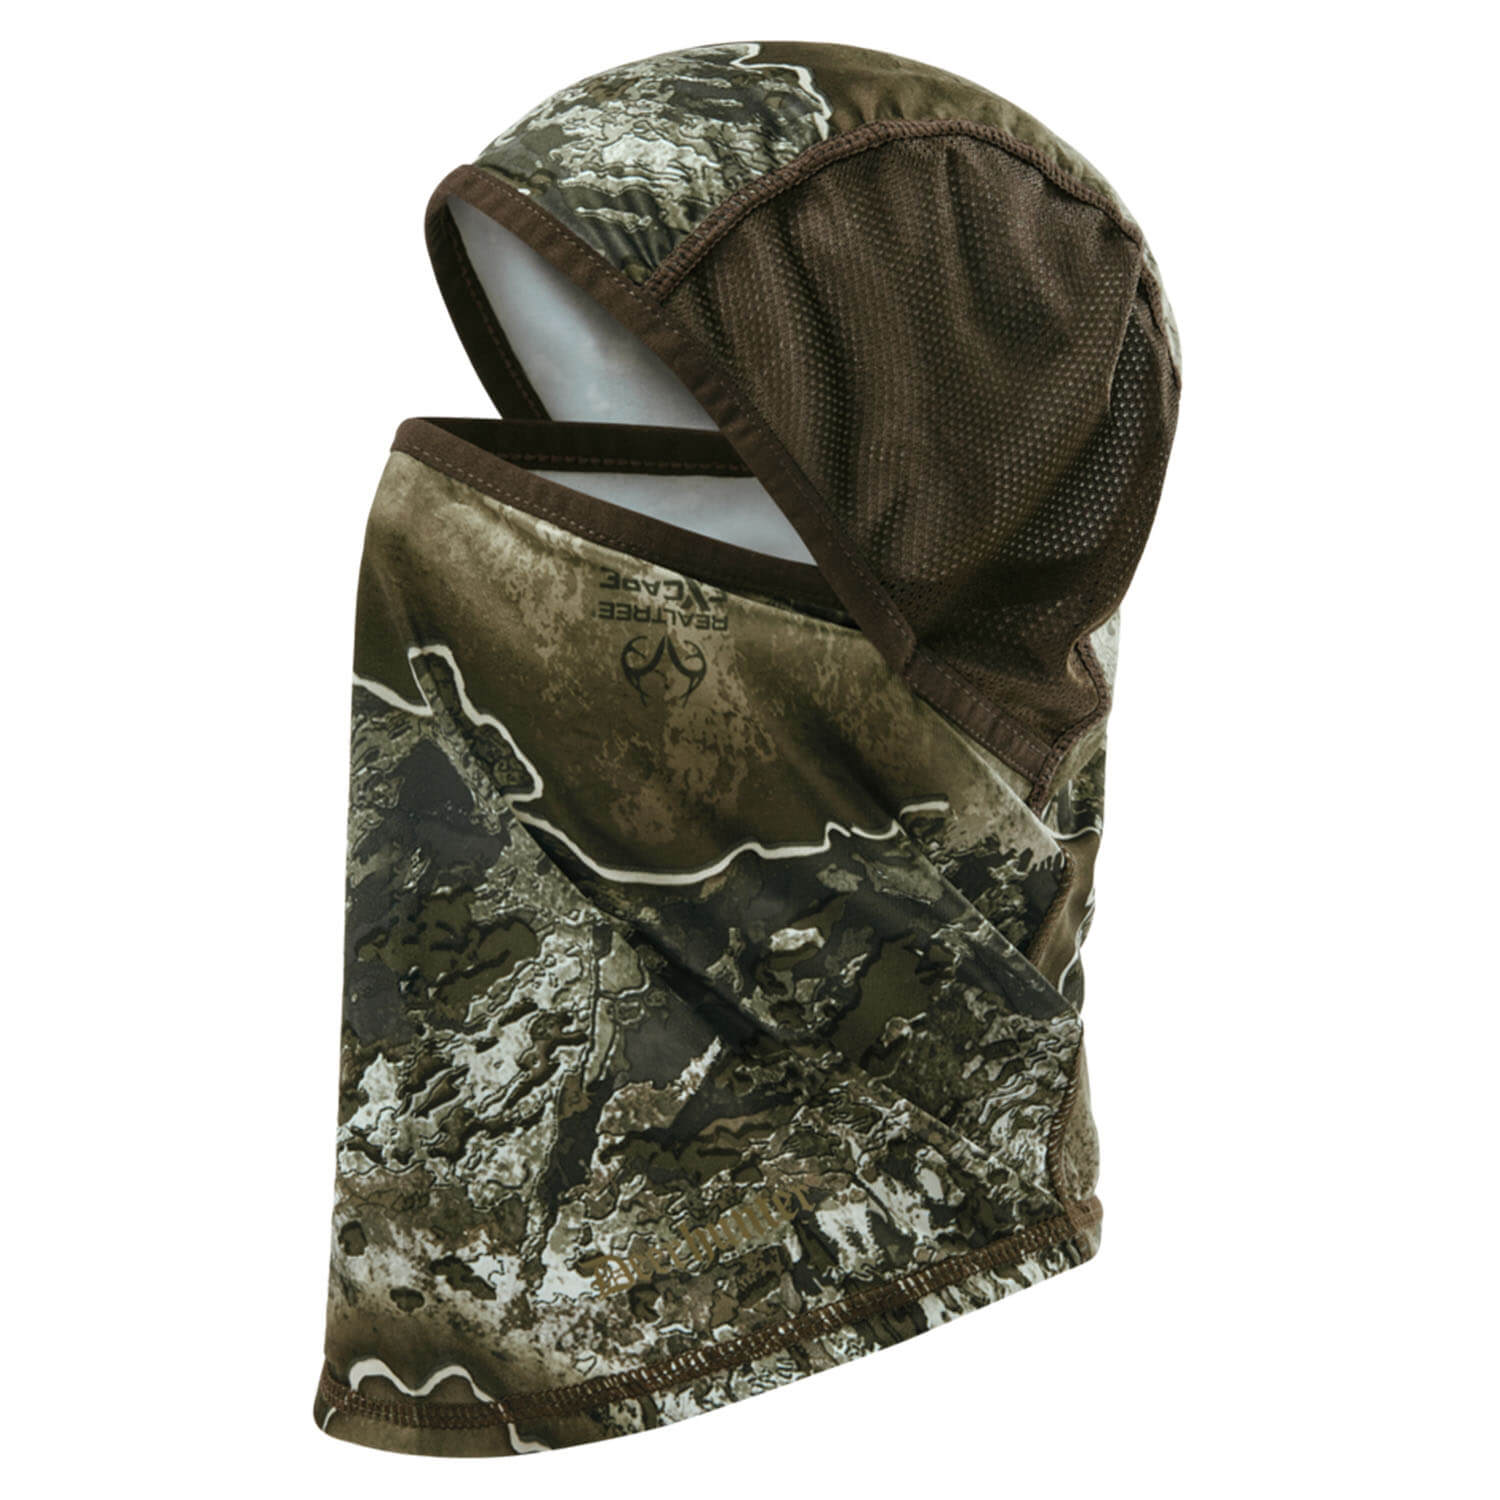  Deerhunter Excape gezichtsmasker (Realtree Excape) - Sjaals & nekwarmer